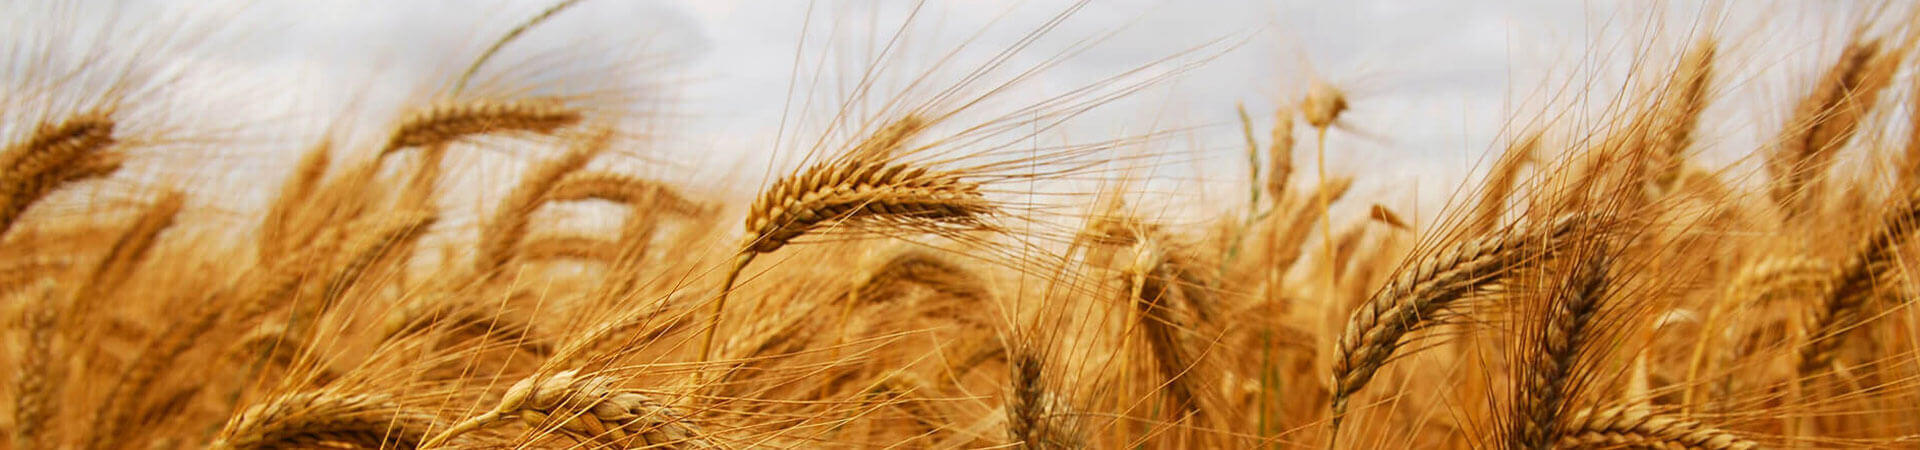 Field of Wheat.